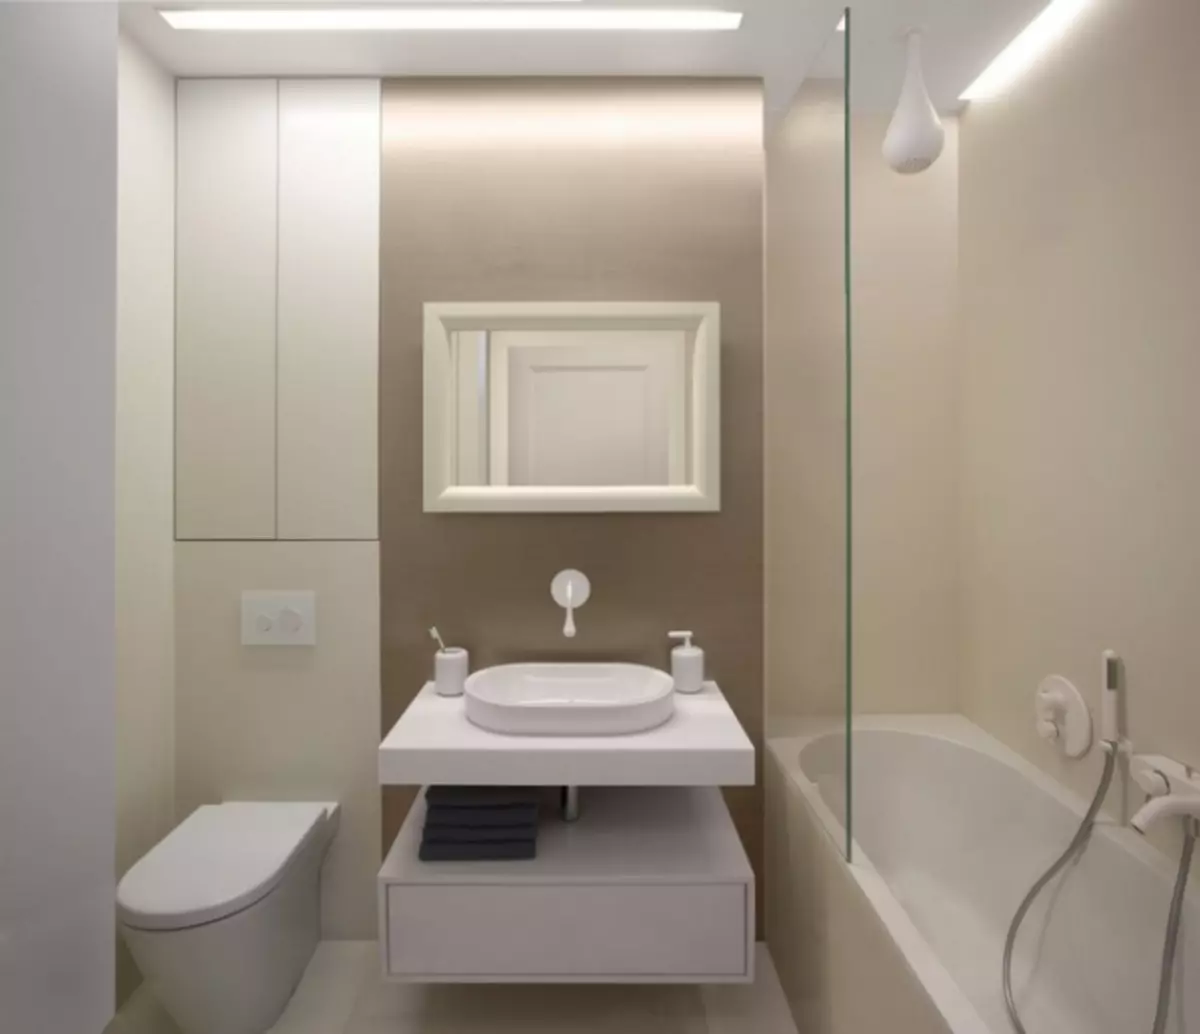 Badezimmerinnenraum in Kombination mit WC: Wie man schön und praktisch auf kleinem Raum (38 Fotos) zu tun (38 Fotos)